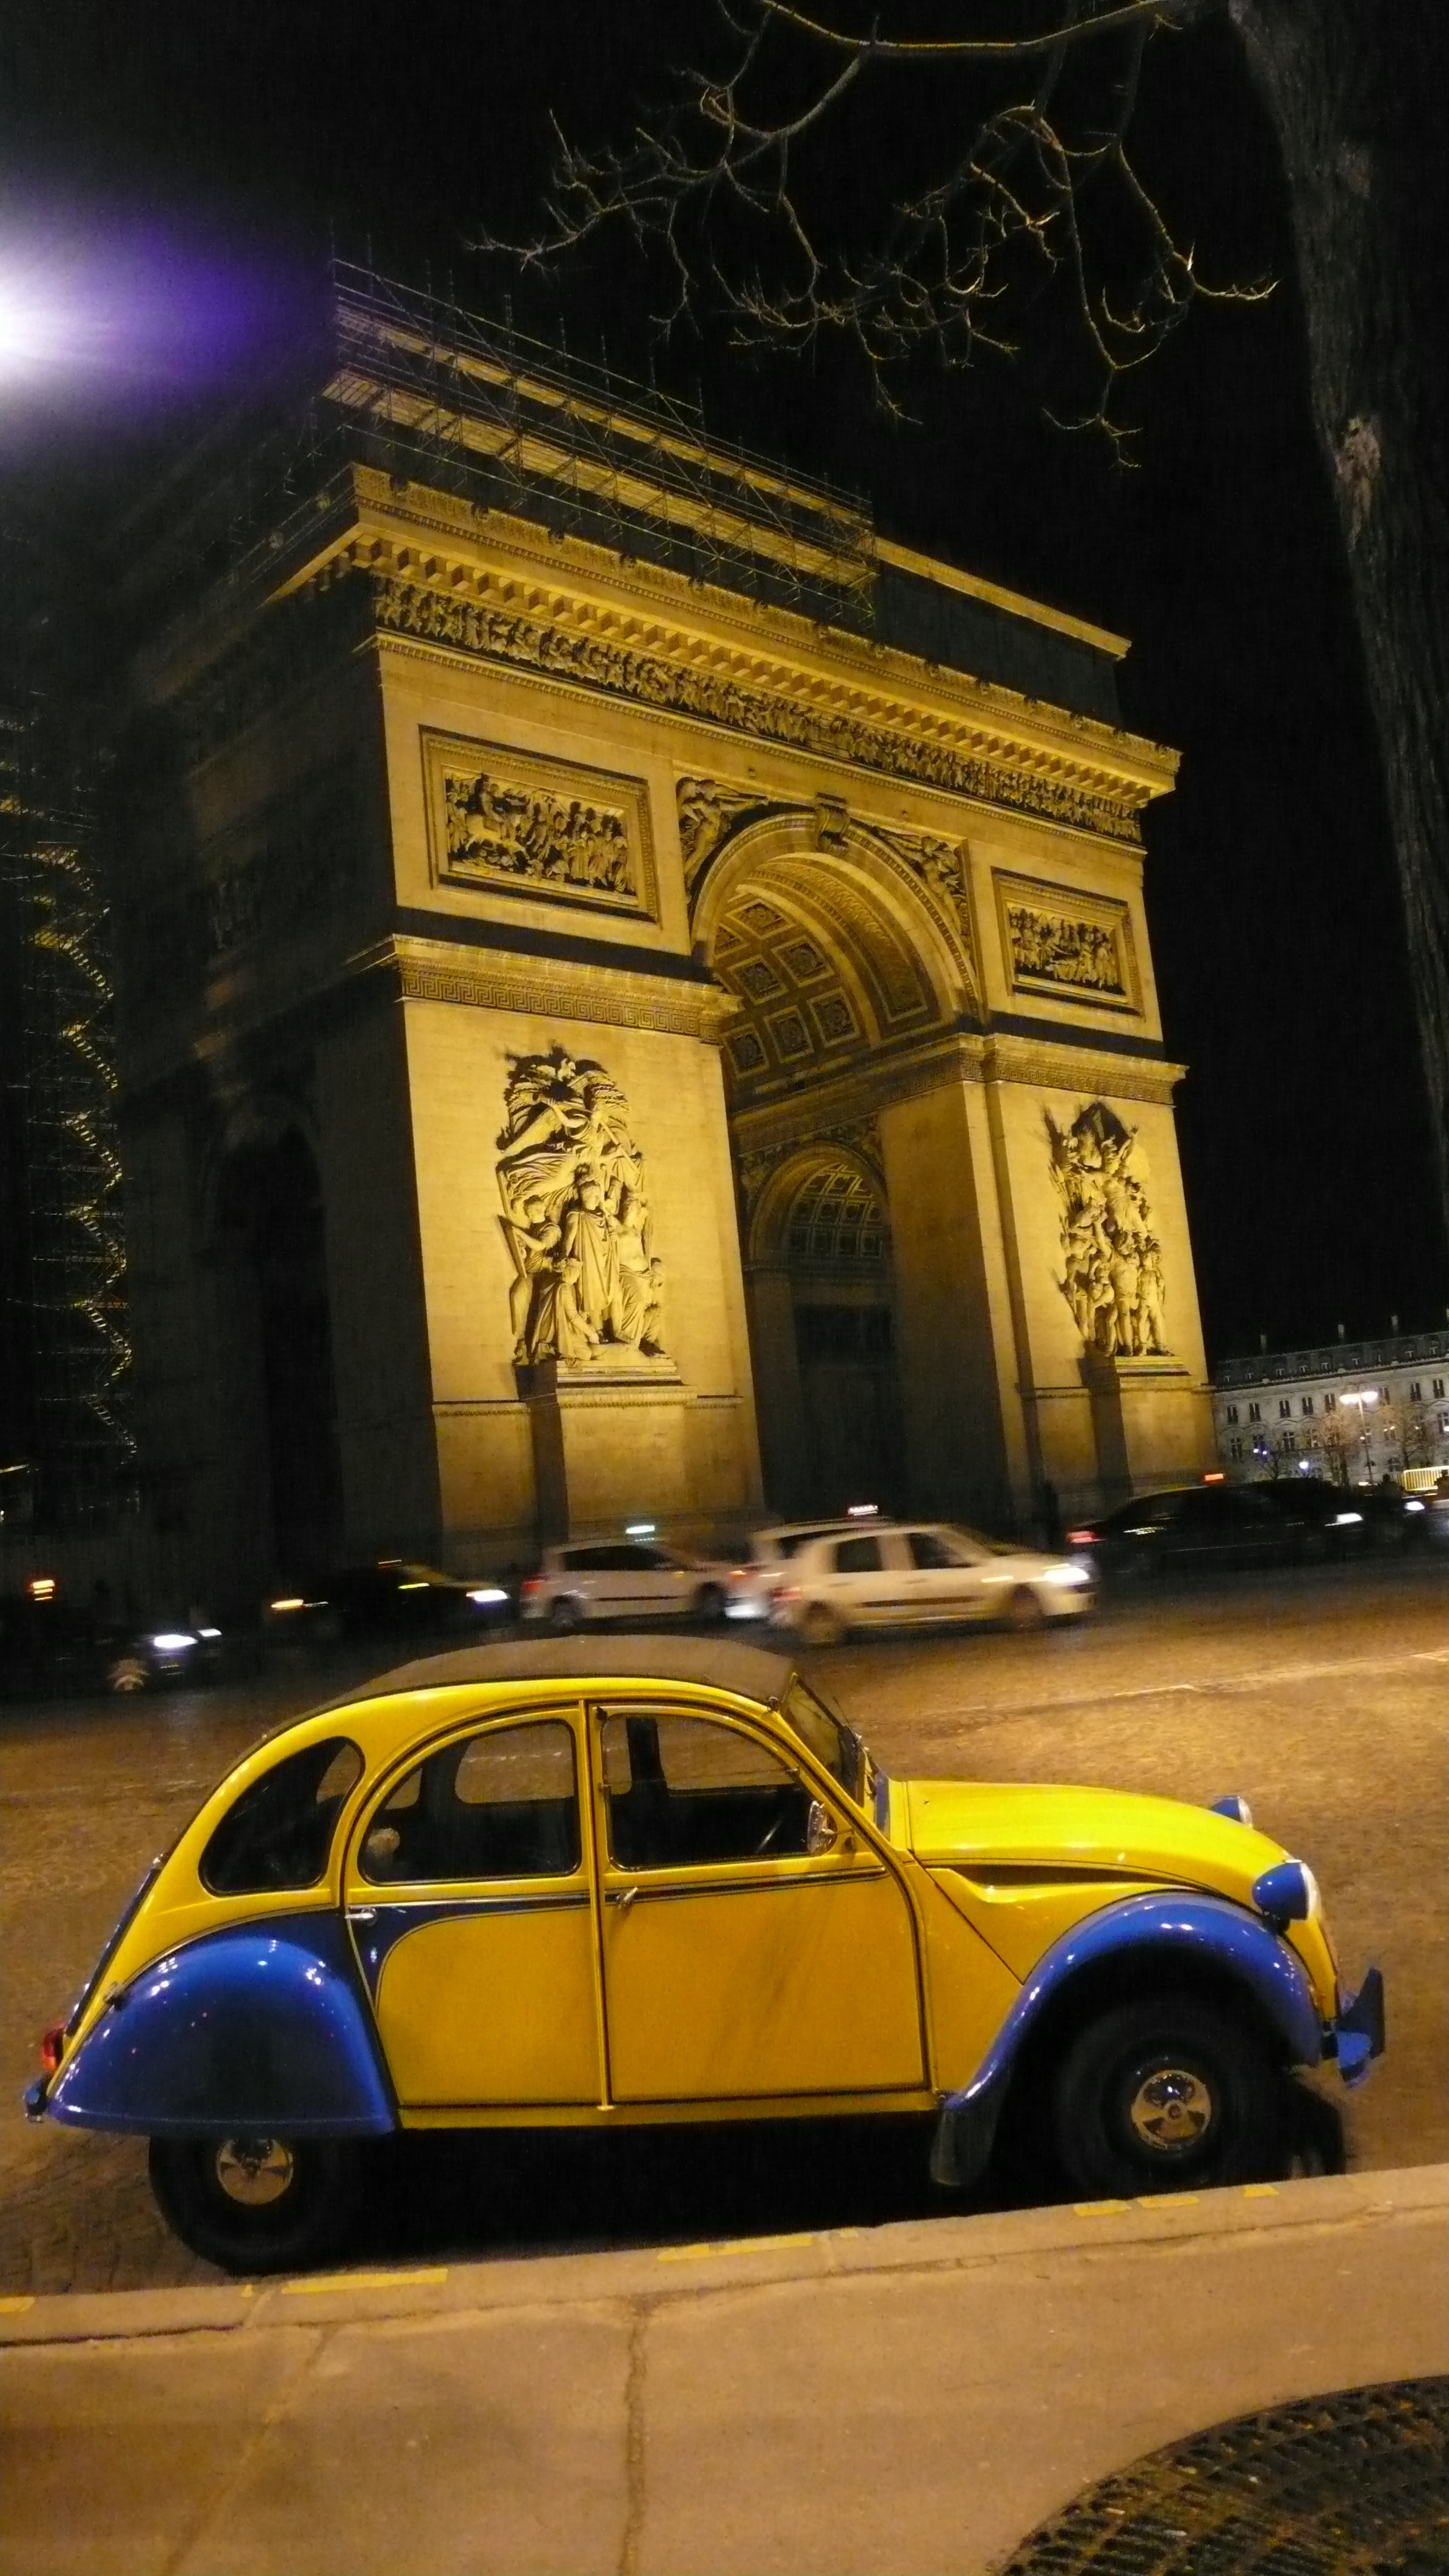 2CVParisTour : Visitez Paris en 2CV! La 2CV et l'Arc de Triomphe